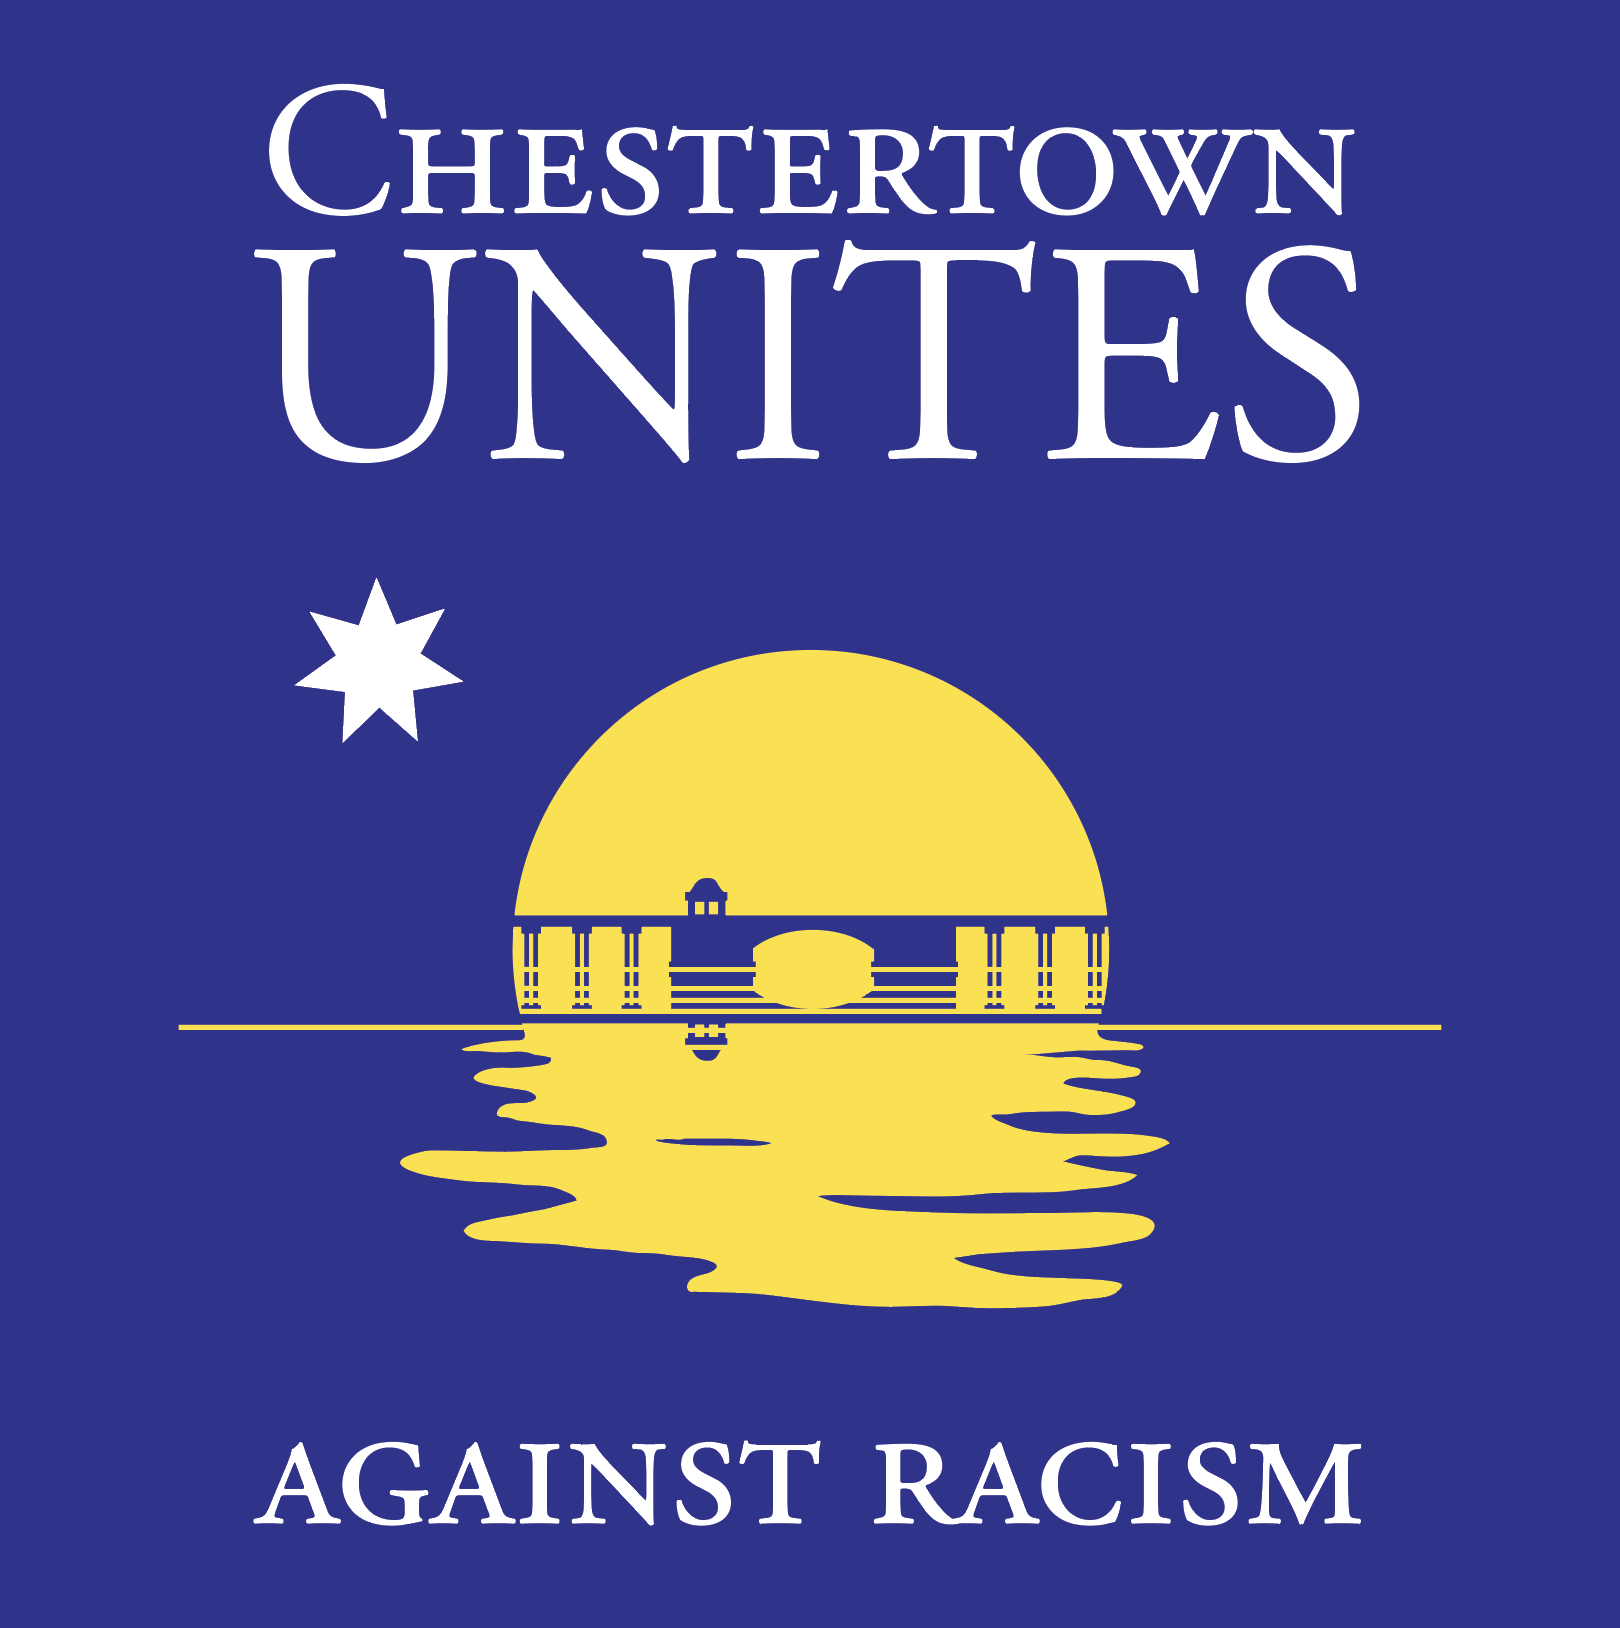 Chestertown Unites Against Racism